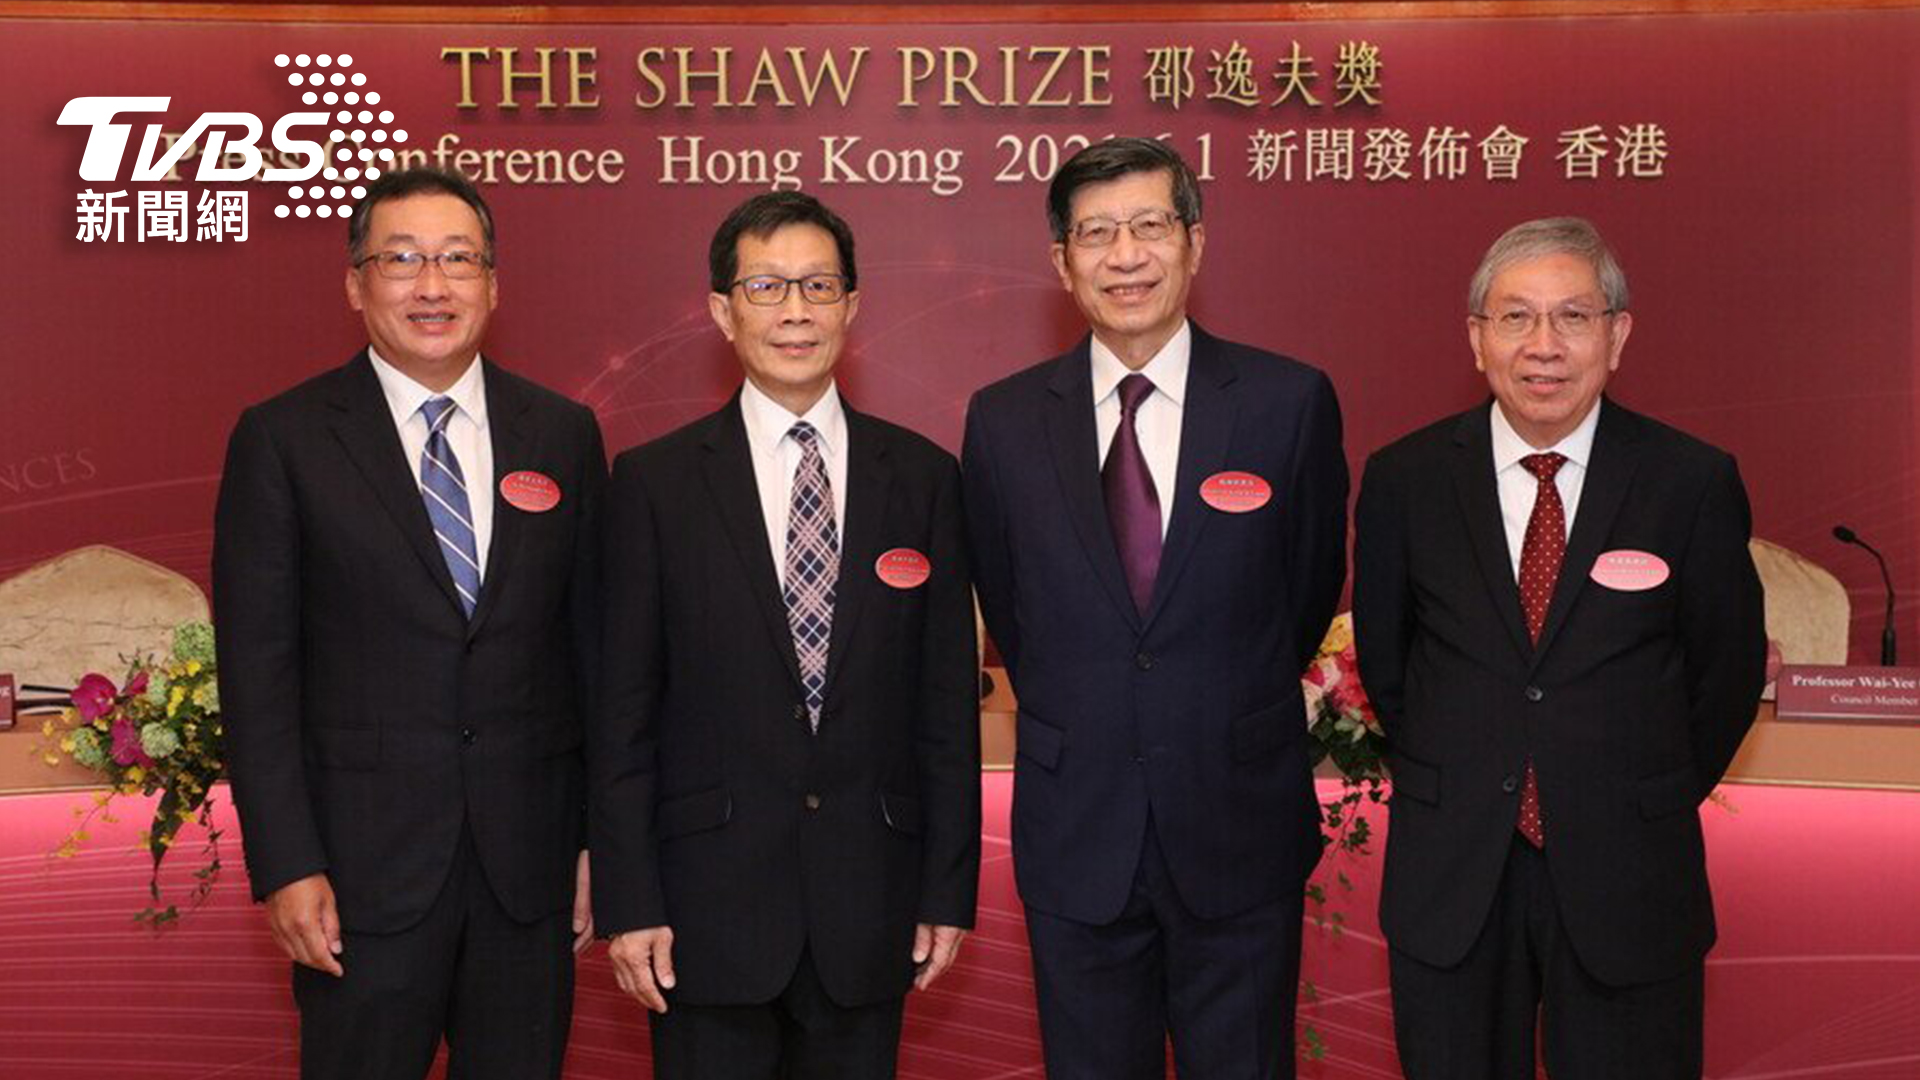 由左至右 陳偉文先生、程伯中教授、楊綱凱教授與陳偉儀教授於2021年新聞發佈會上合照。(圖/TVBS提供)